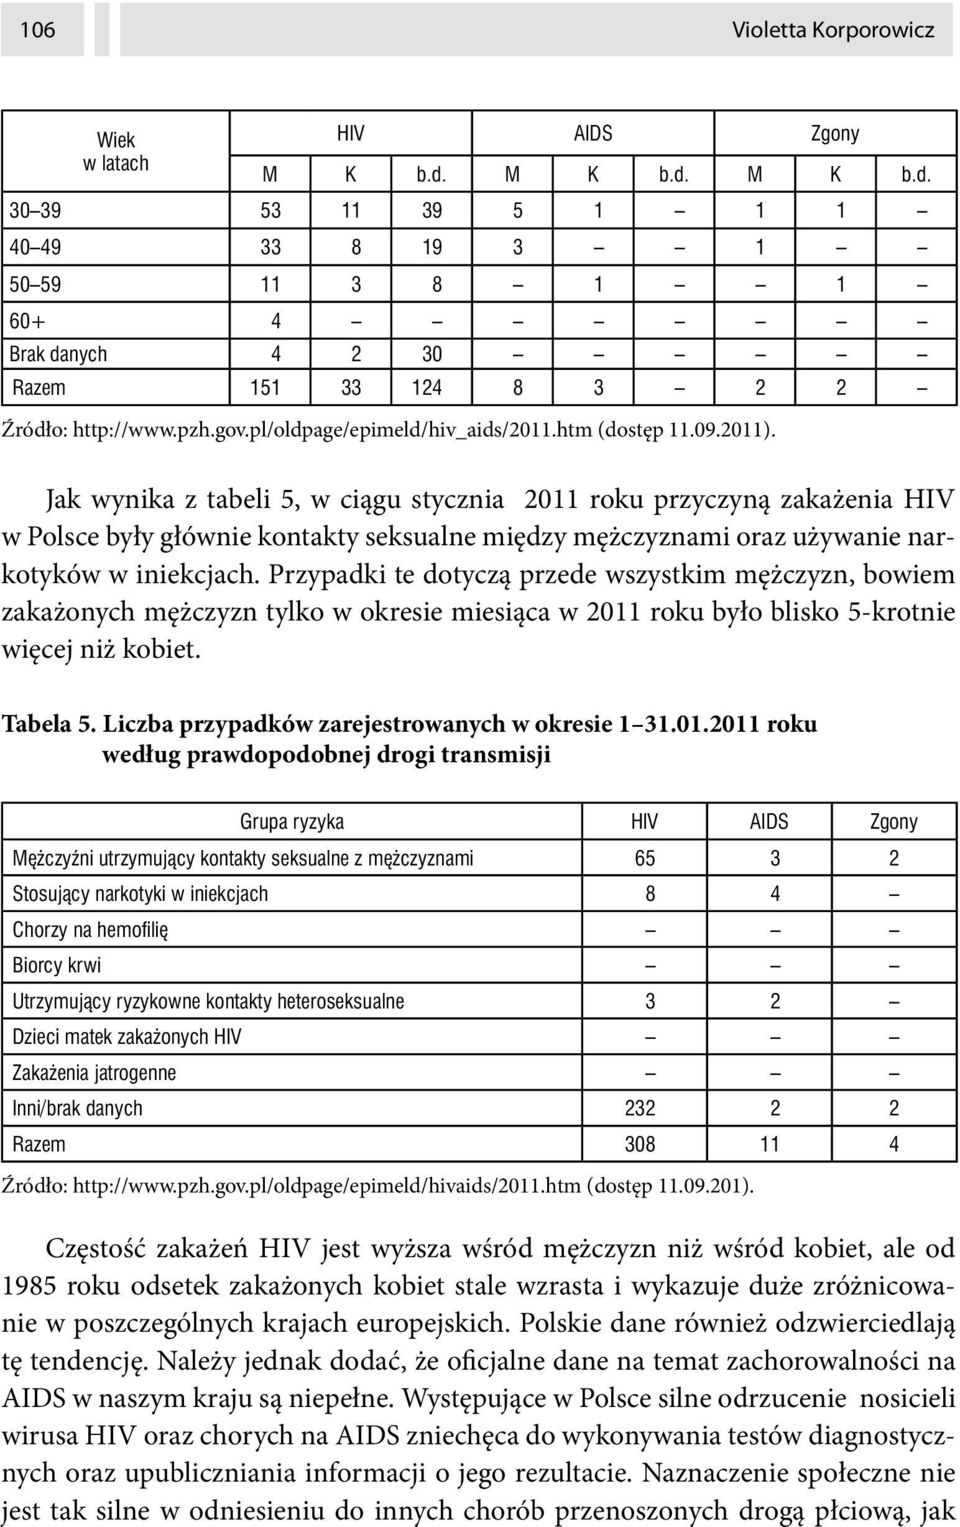 Jak wynika z tabeli 5, w ciągu stycznia 2011 roku przyczyną zakażenia HIV w Polsce były głównie kontakty seksualne między mężczyznami oraz używanie narkotyków w iniekcjach.